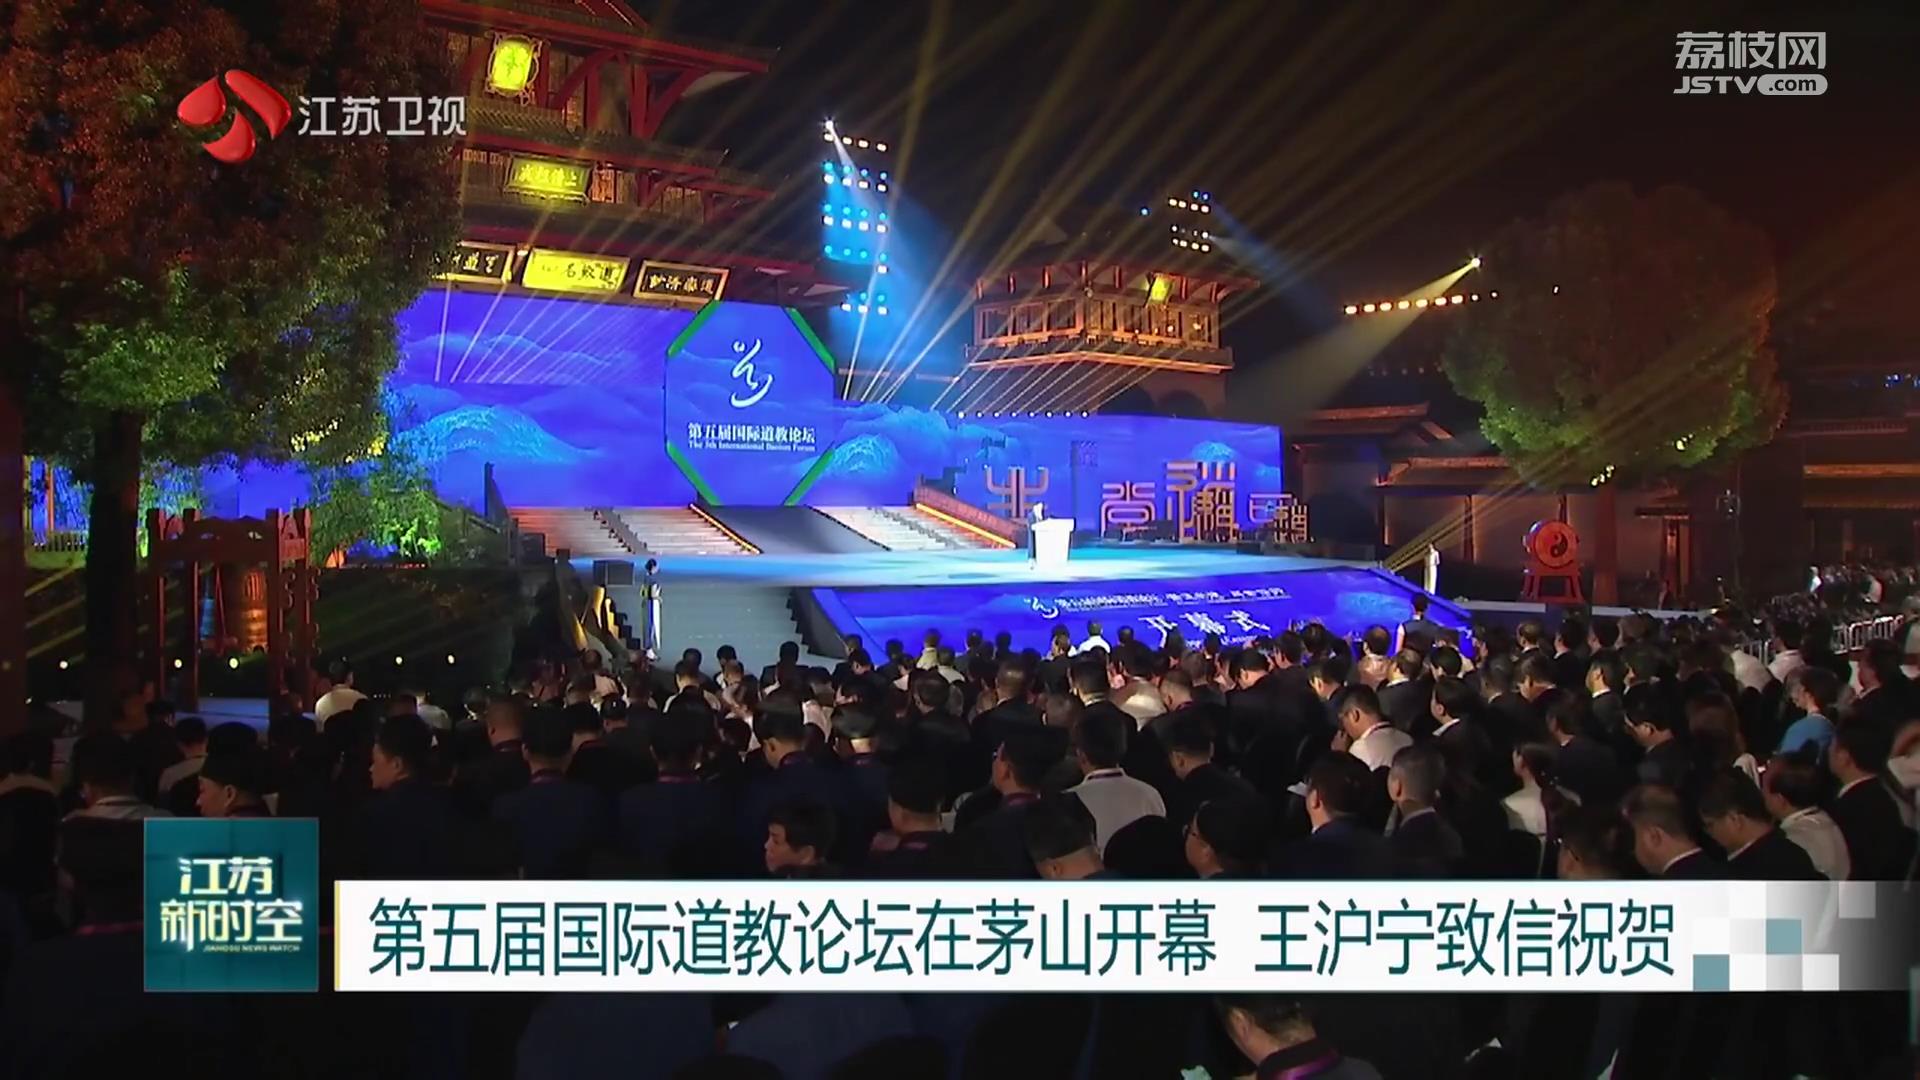 第五届国际道教论坛在茅山开幕 王沪宁致信祝贺